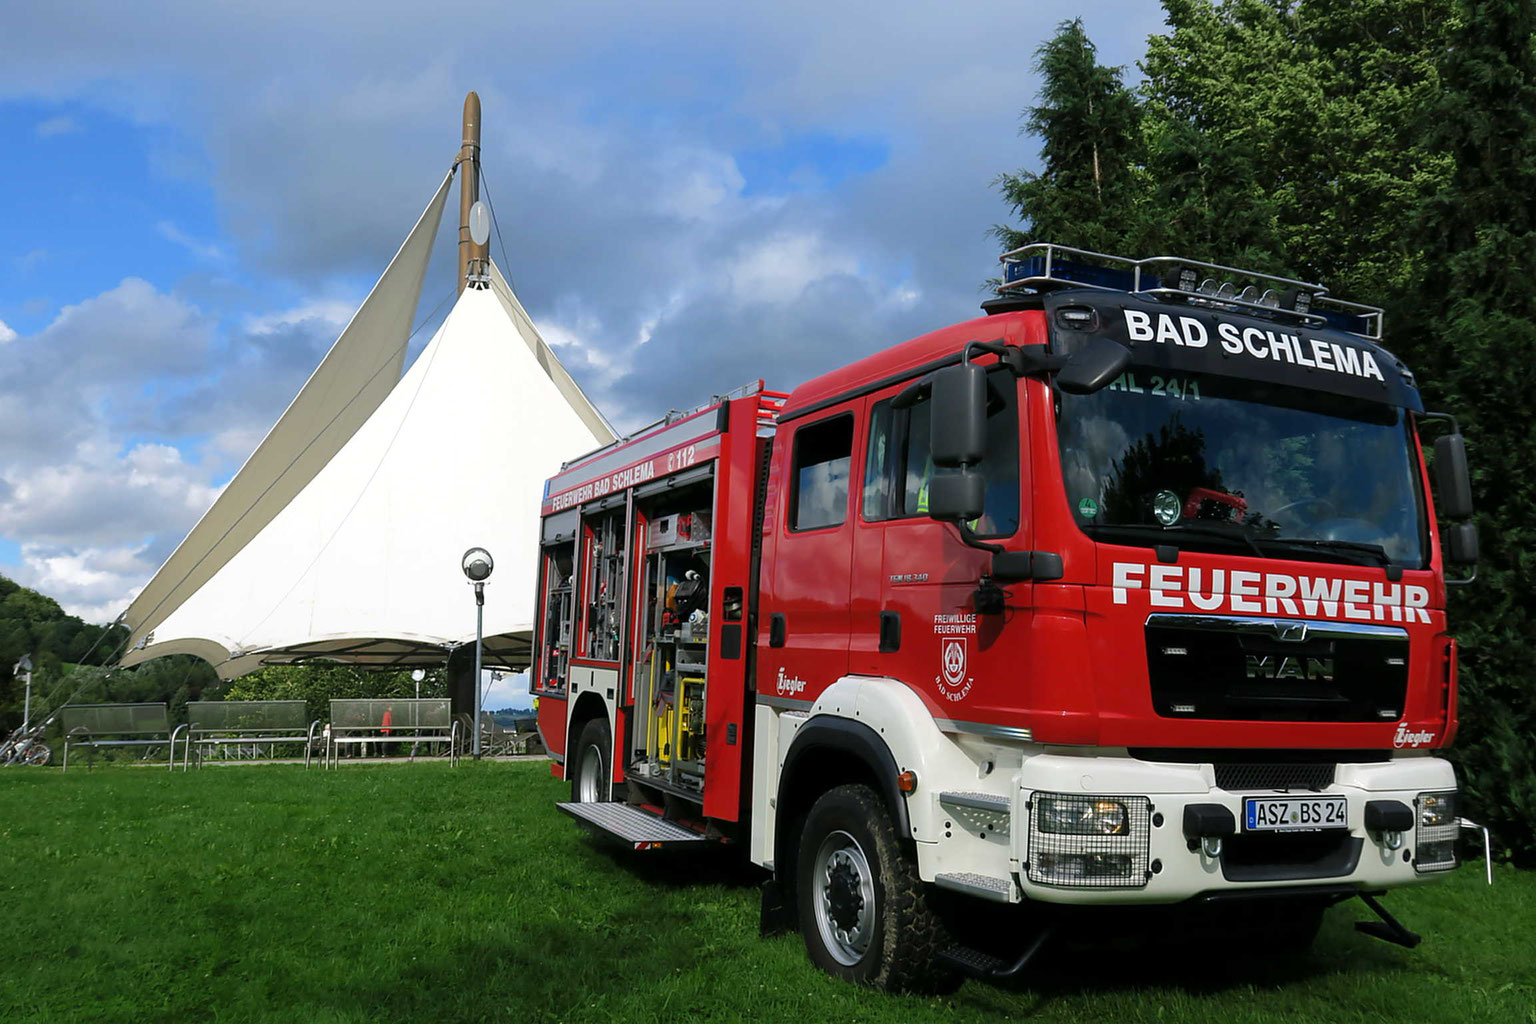 (c) Feuerwehr-badschlema.de